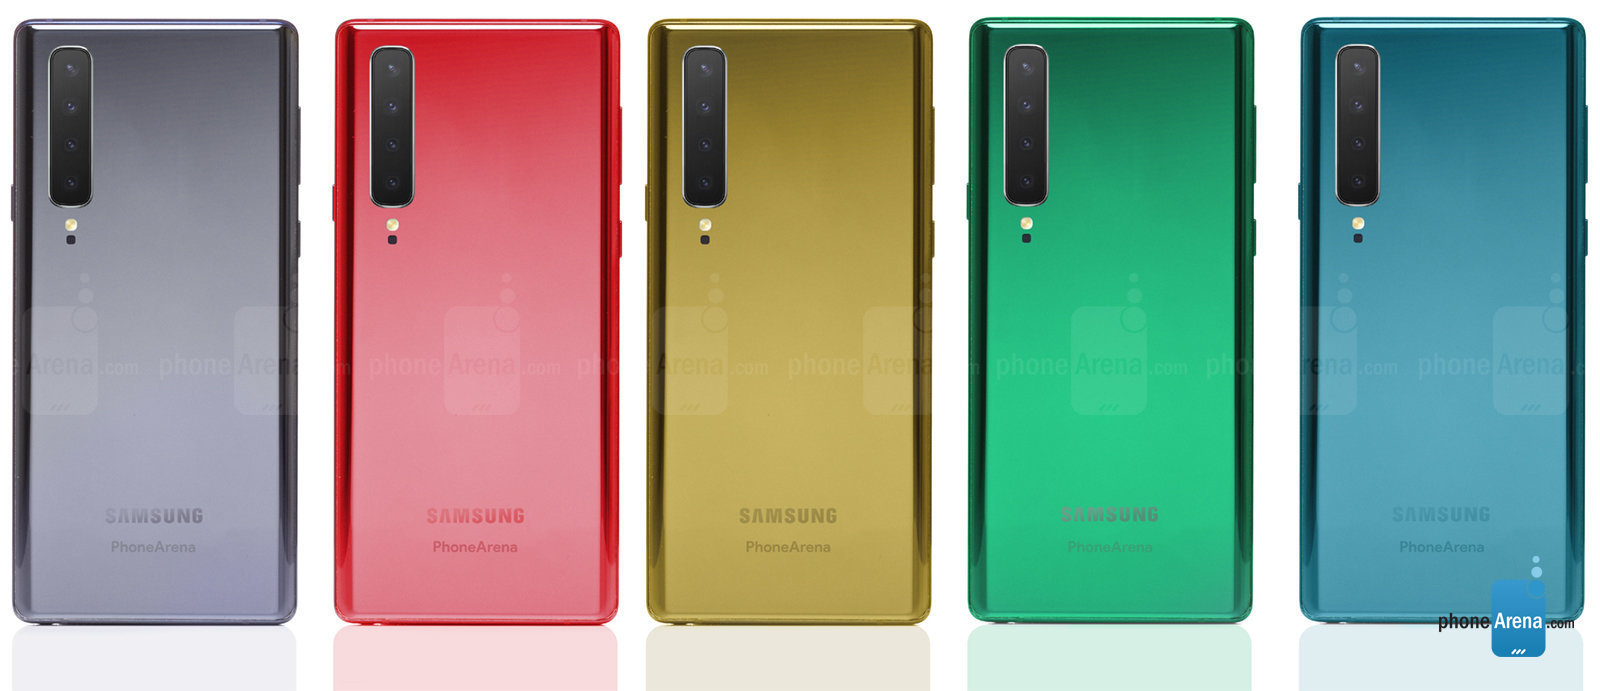 Samsung-Galaxy-Note-10-1additional.jpg